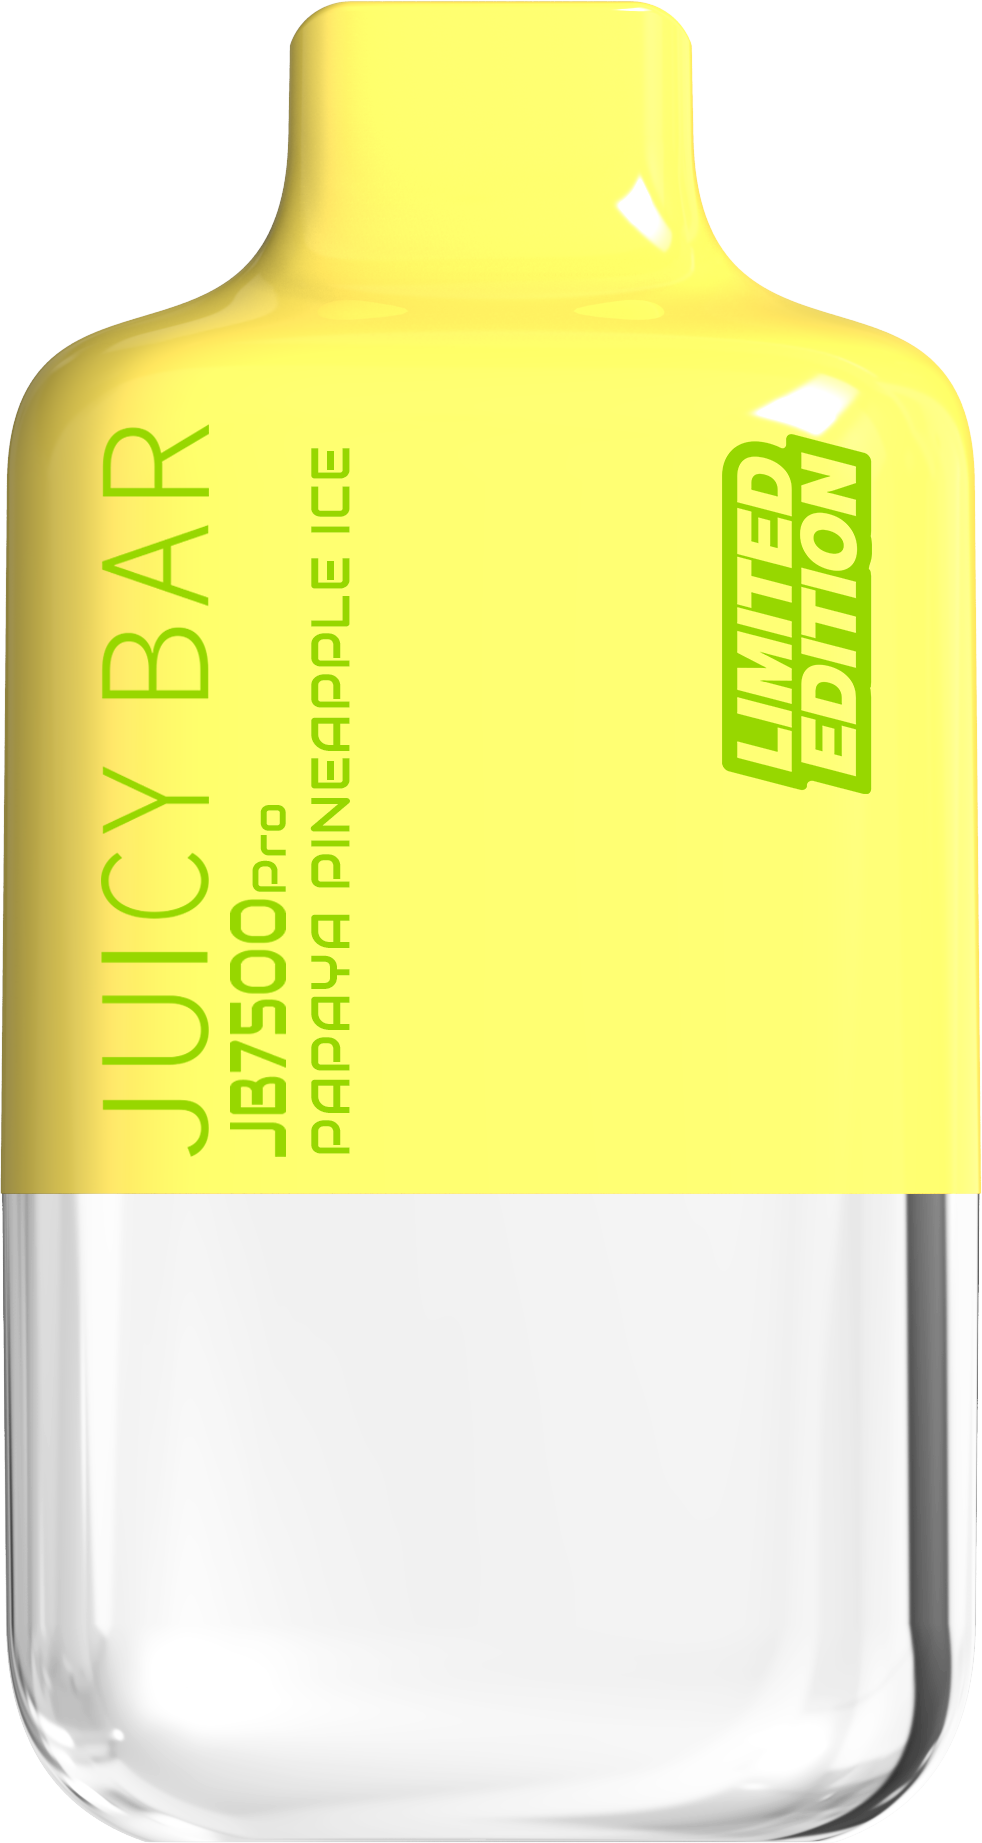 Juicy Bar Pro Edition 7500 Puffs 5% | Papaya Pineapple Ice